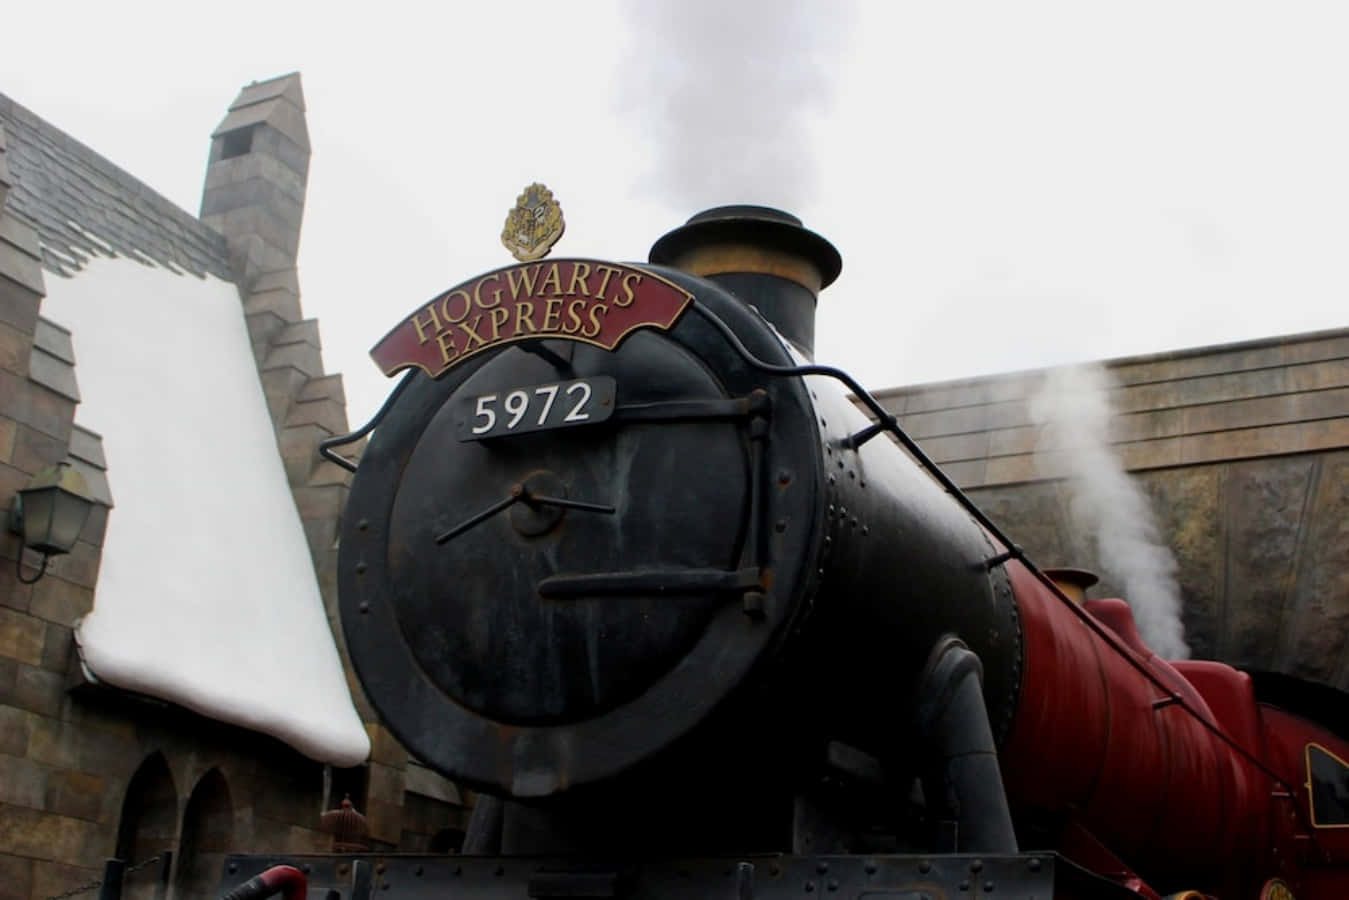 "All Aboard The Hogwarts Express" Wallpaper